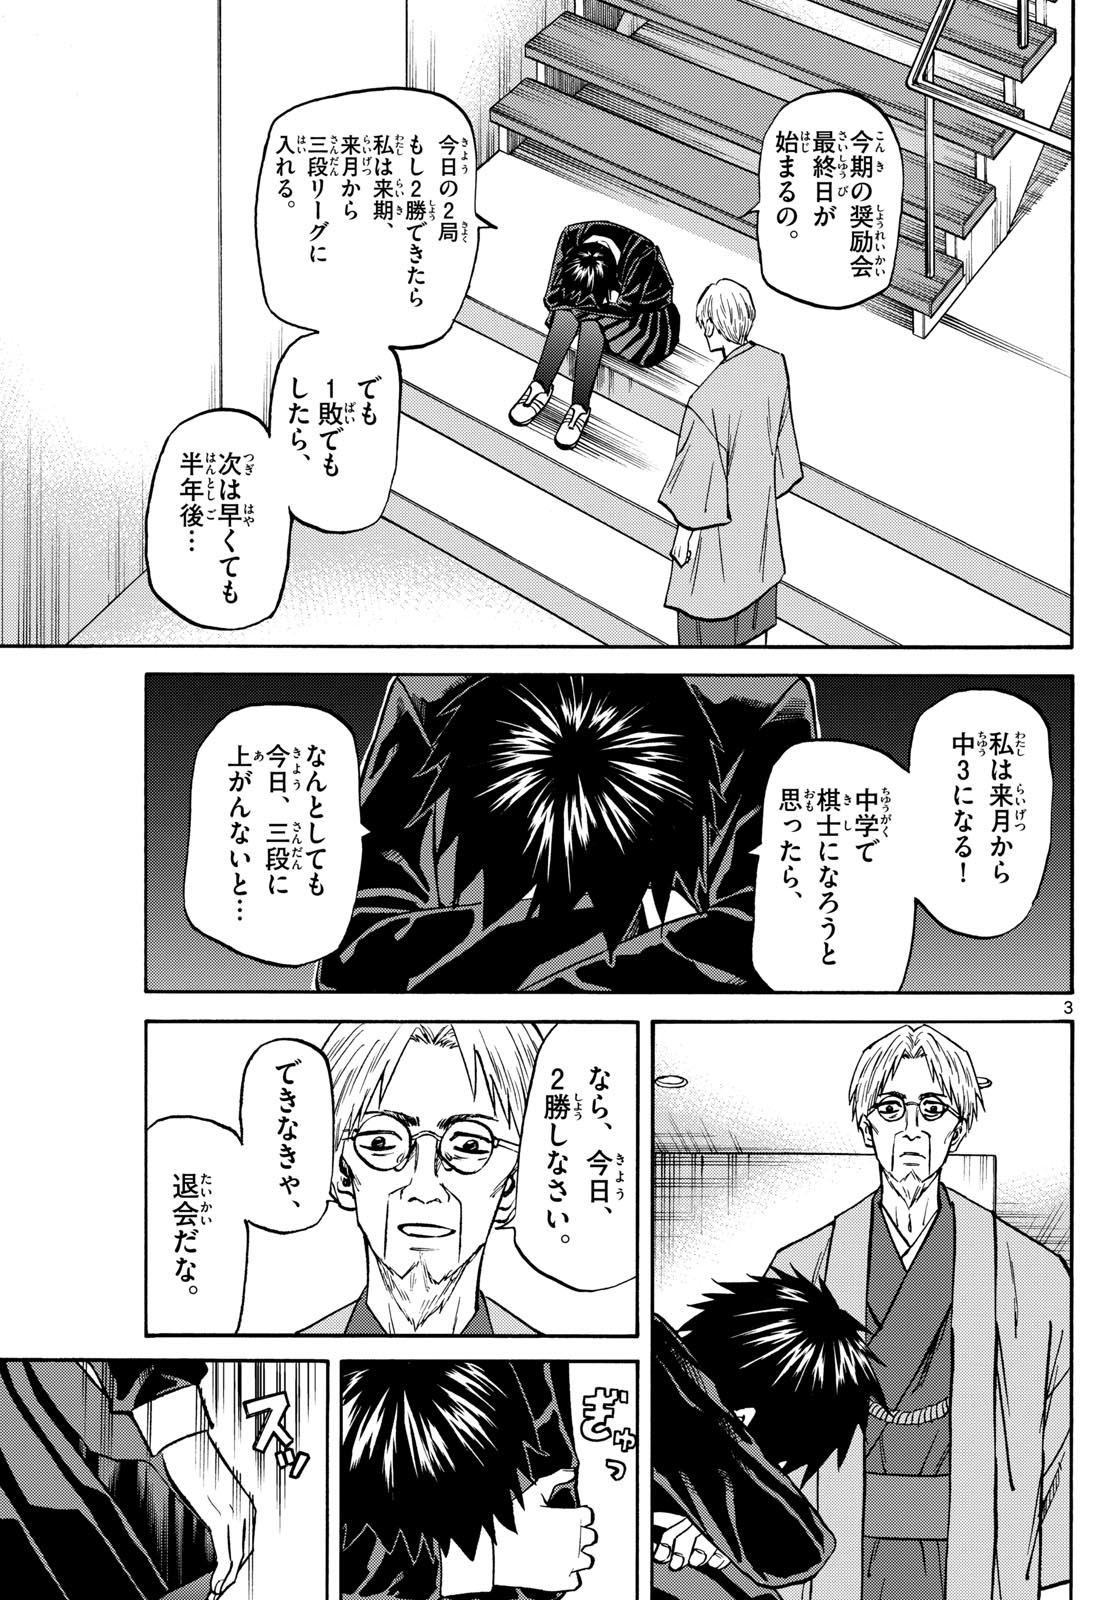 Tatsu to Ichigo - Chapter 181 - Page 3